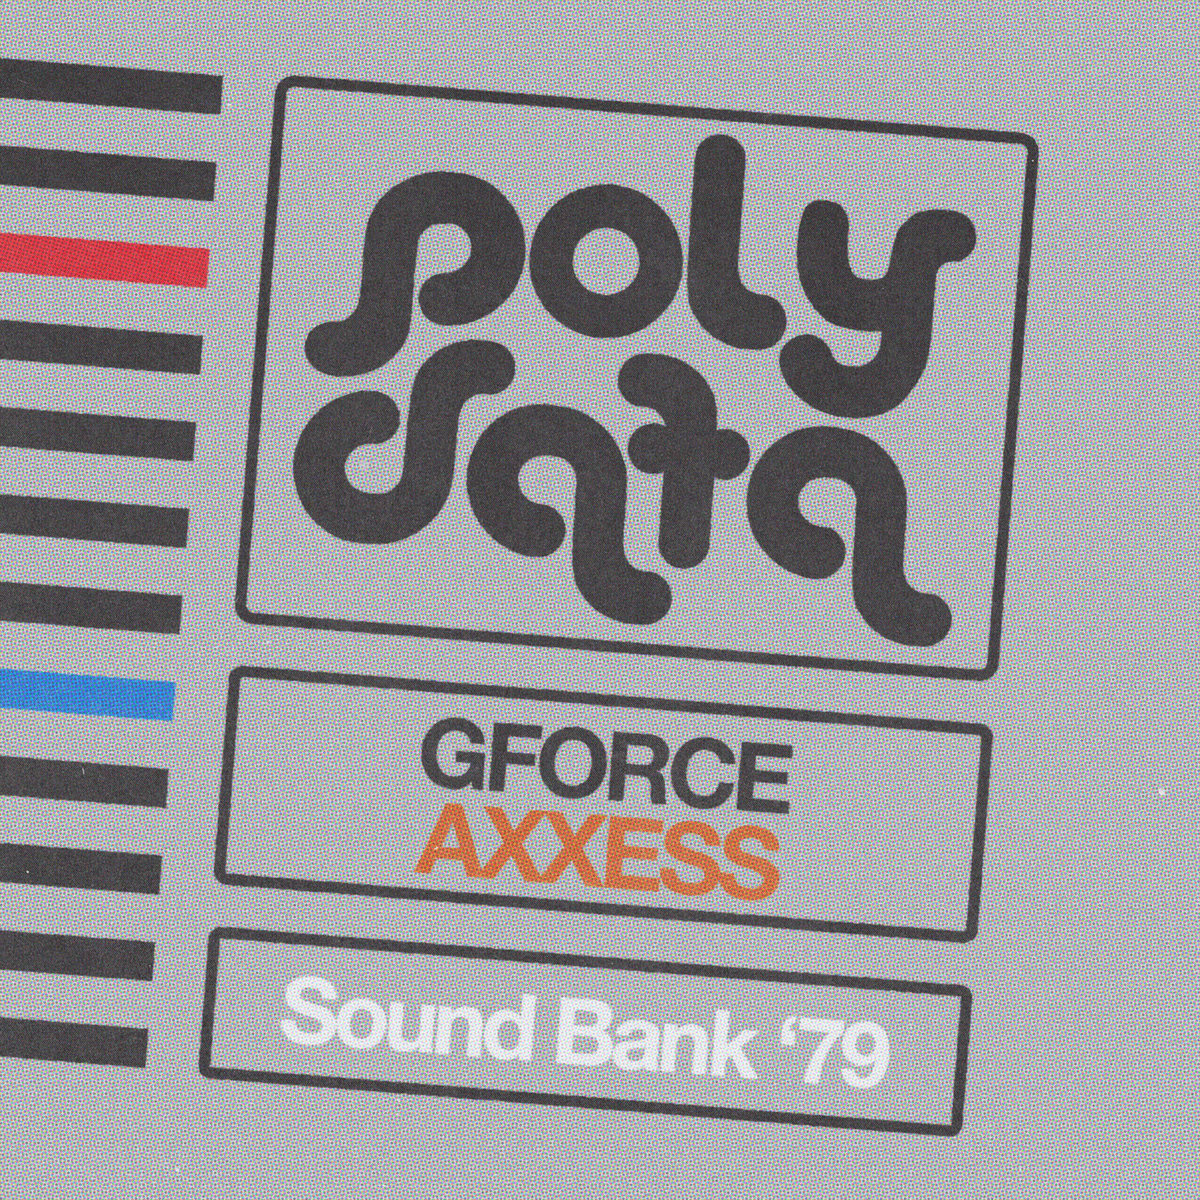 Image of GForce AXXESS - Sound Bank '79